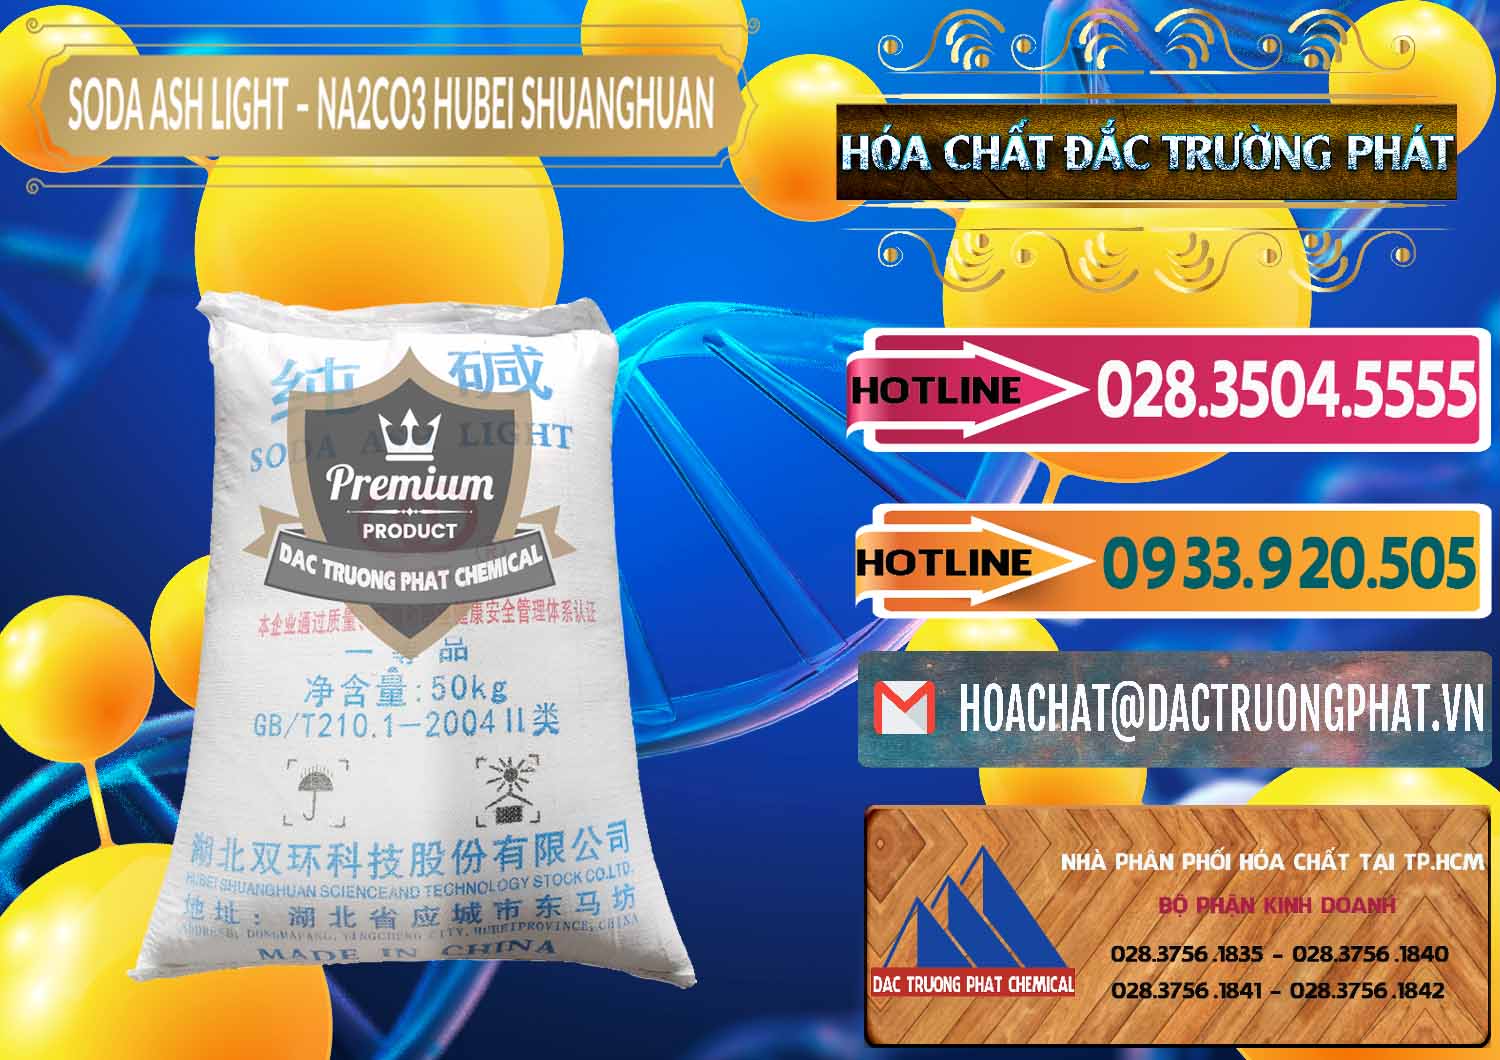 Cty chuyên bán ( phân phối ) Soda Ash Light - NA2CO3 2 Vòng Tròn Hubei Shuanghuan Trung Quốc China - 0130 - Cty nhập khẩu và cung cấp hóa chất tại TP.HCM - dactruongphat.vn